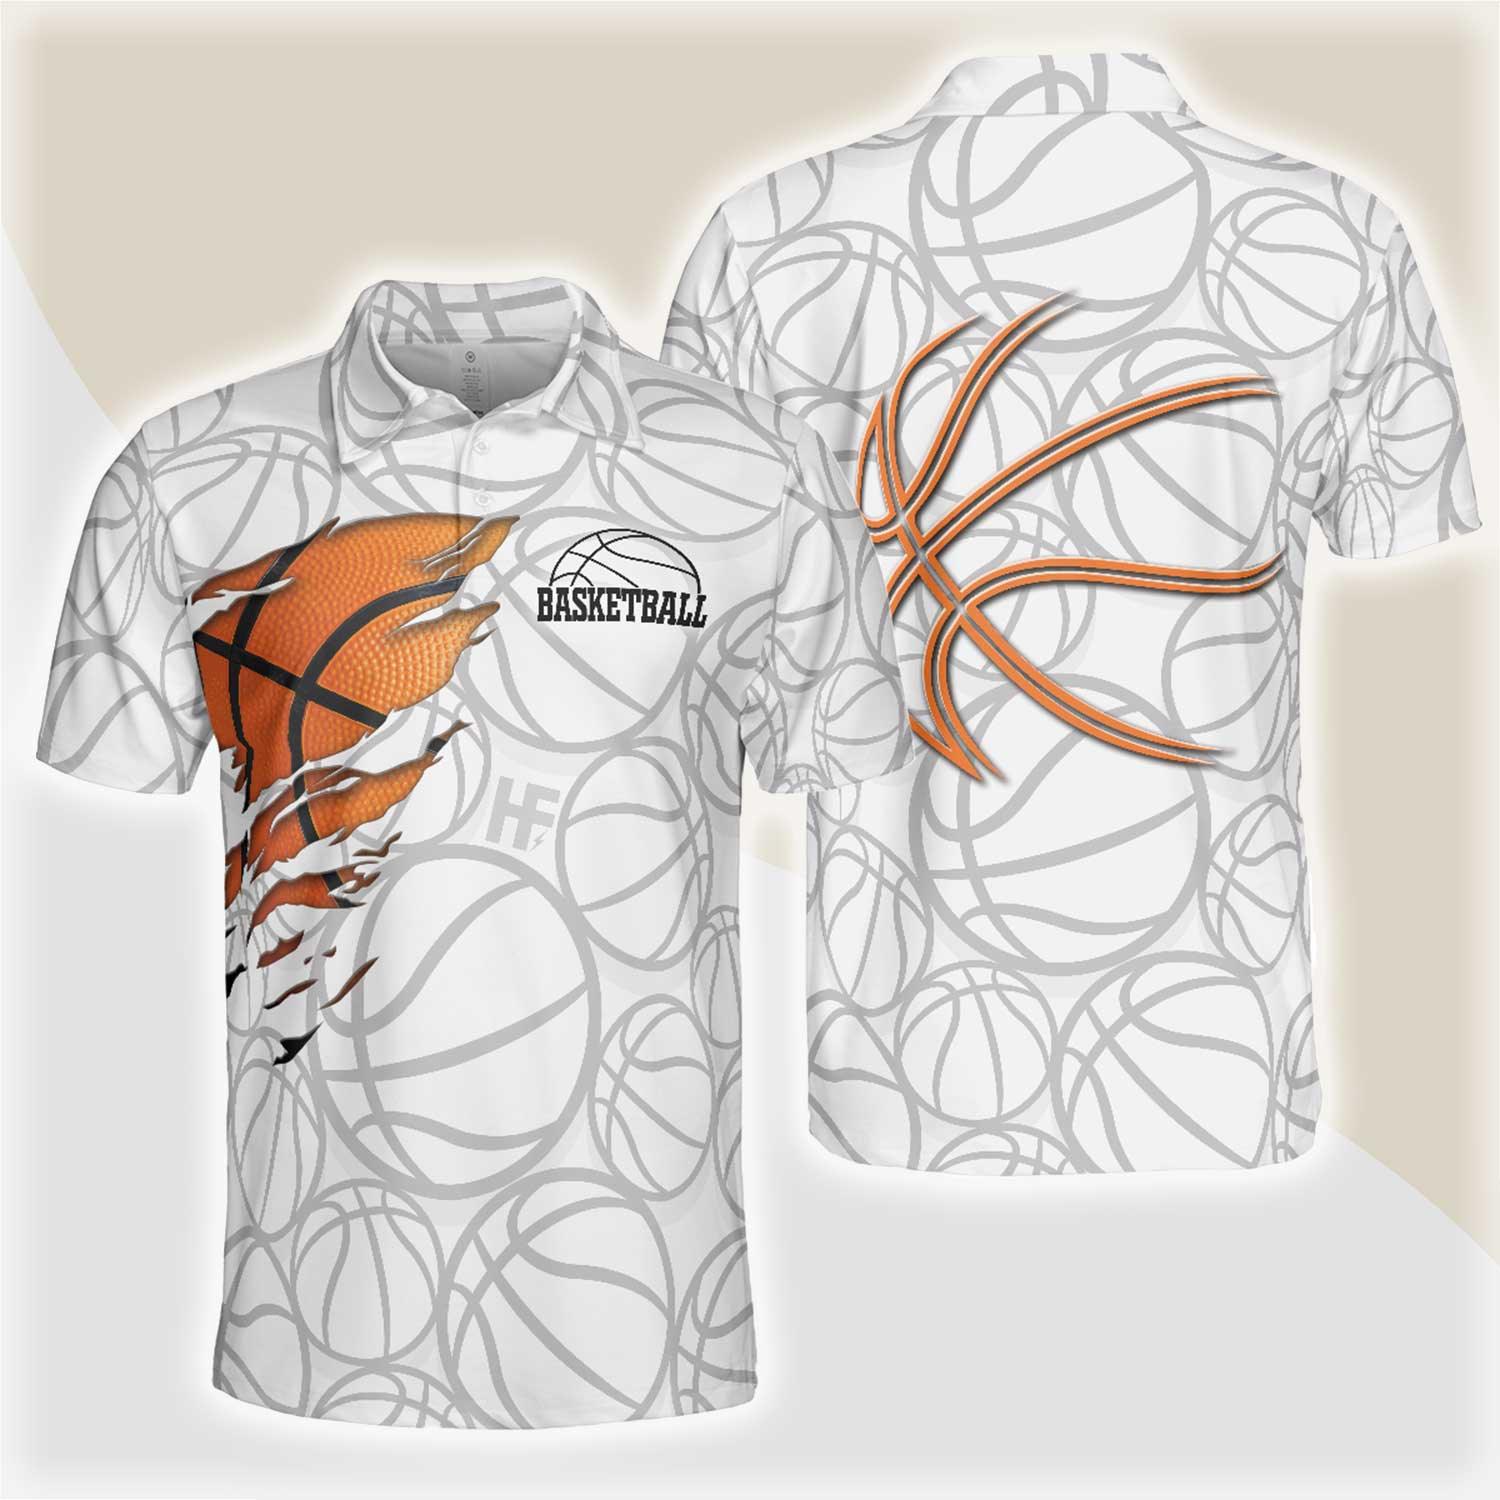 Basketball Men Polo Shirt, Basketball Player Polo Shirt, White Basketball Pattern Polo Shirt Design For Men, Basketball Players, Basketball Lovers - Amzanimalsgift